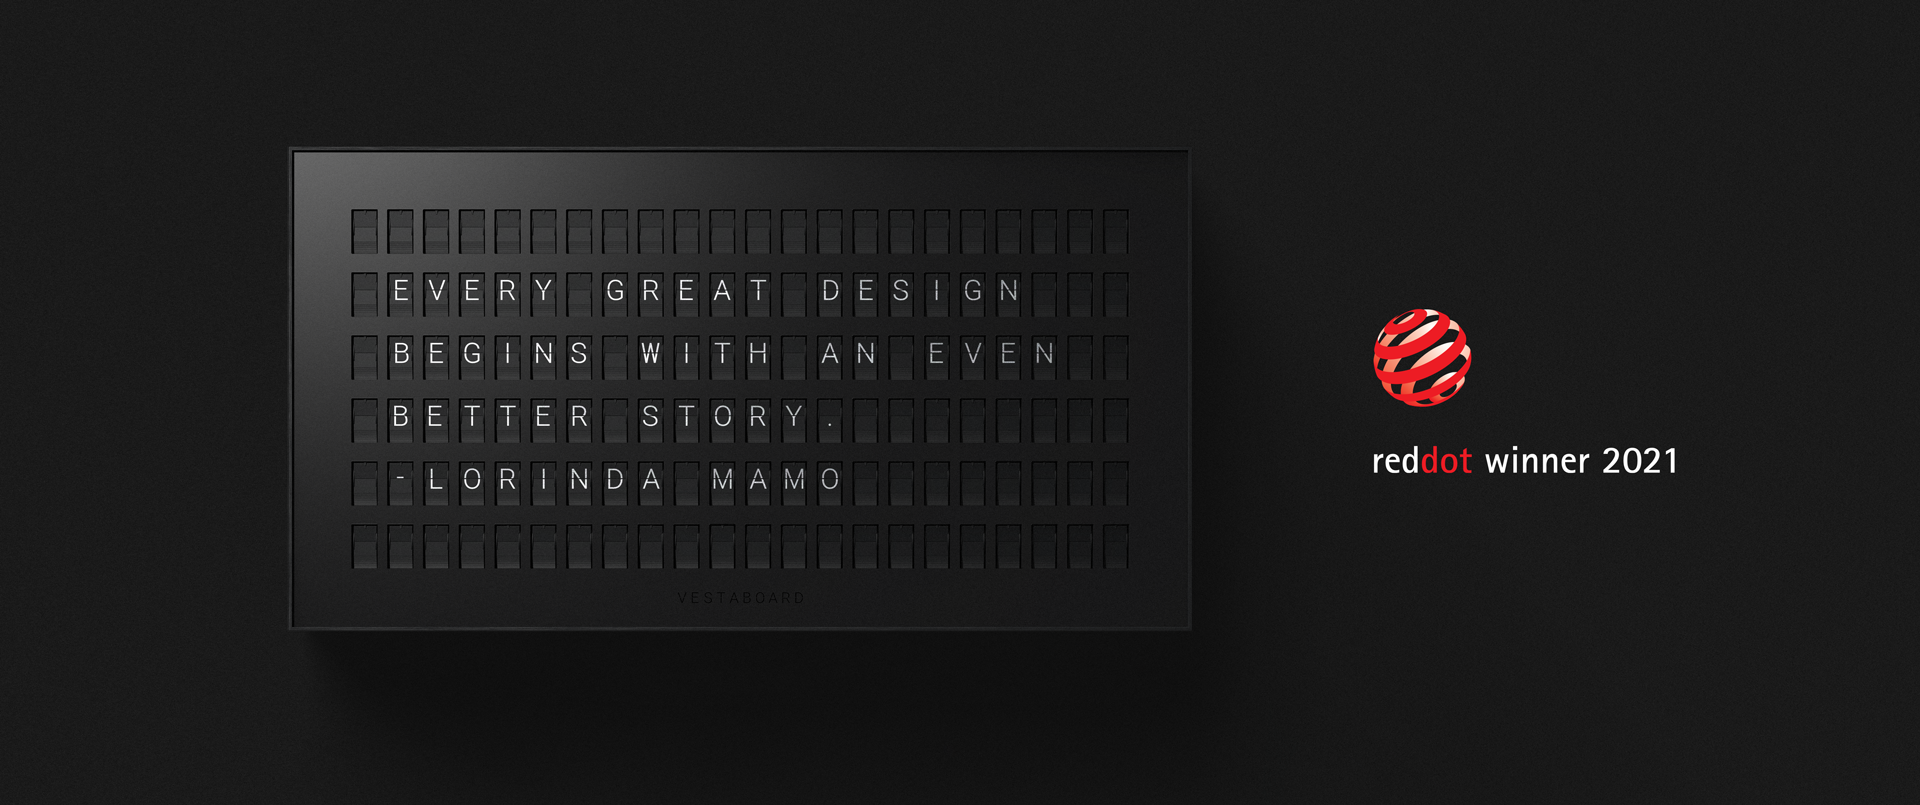 Vestaboard messaging display wins Red Dot Design Award for Product Design